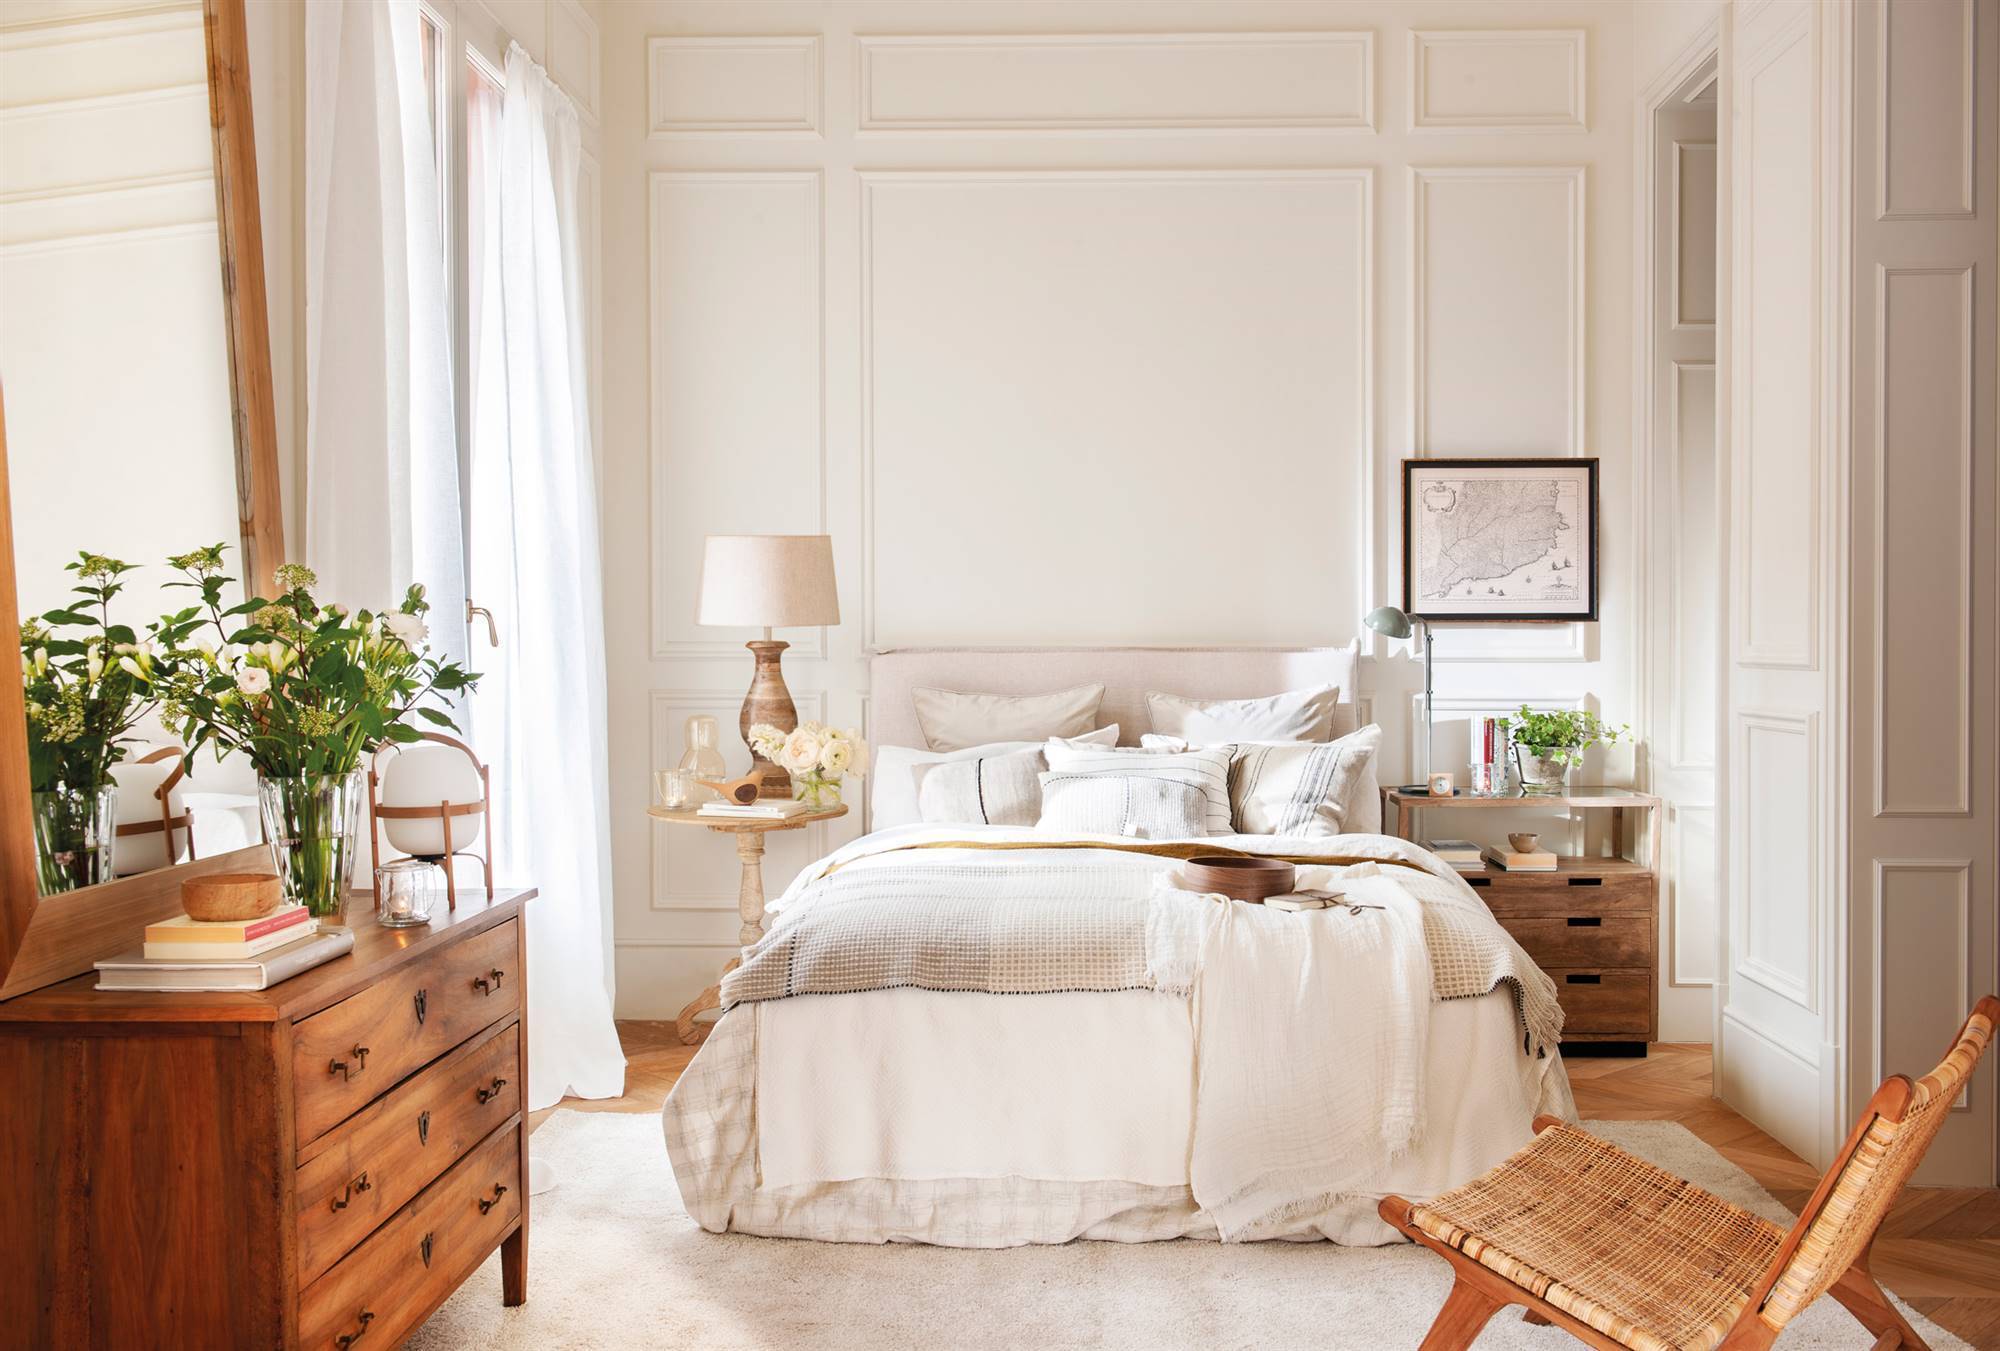 dormitorio de matrimonio de estilo clasico-en-blanco-y-madera-00501537 